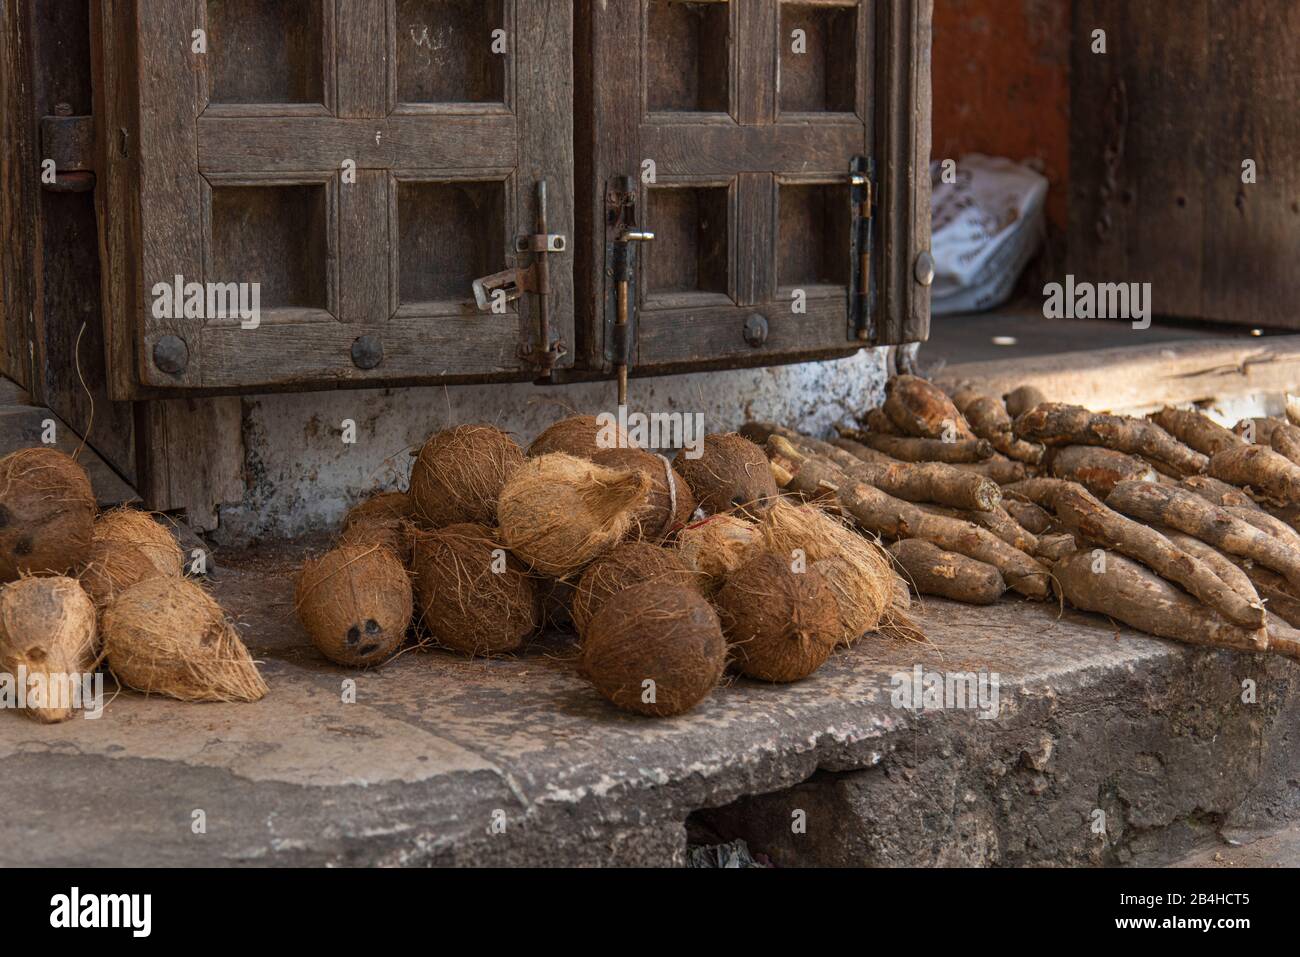 Destinazione Tanzania, Isola di Zanzibar: Impressioni dalla città di pietra, la parte più antica della città di Zanzibar, la capitale dello stato tanzaniano di Zanzibar alla fine del Ramadan. Vendita di cocco sulla strada. Foto Stock